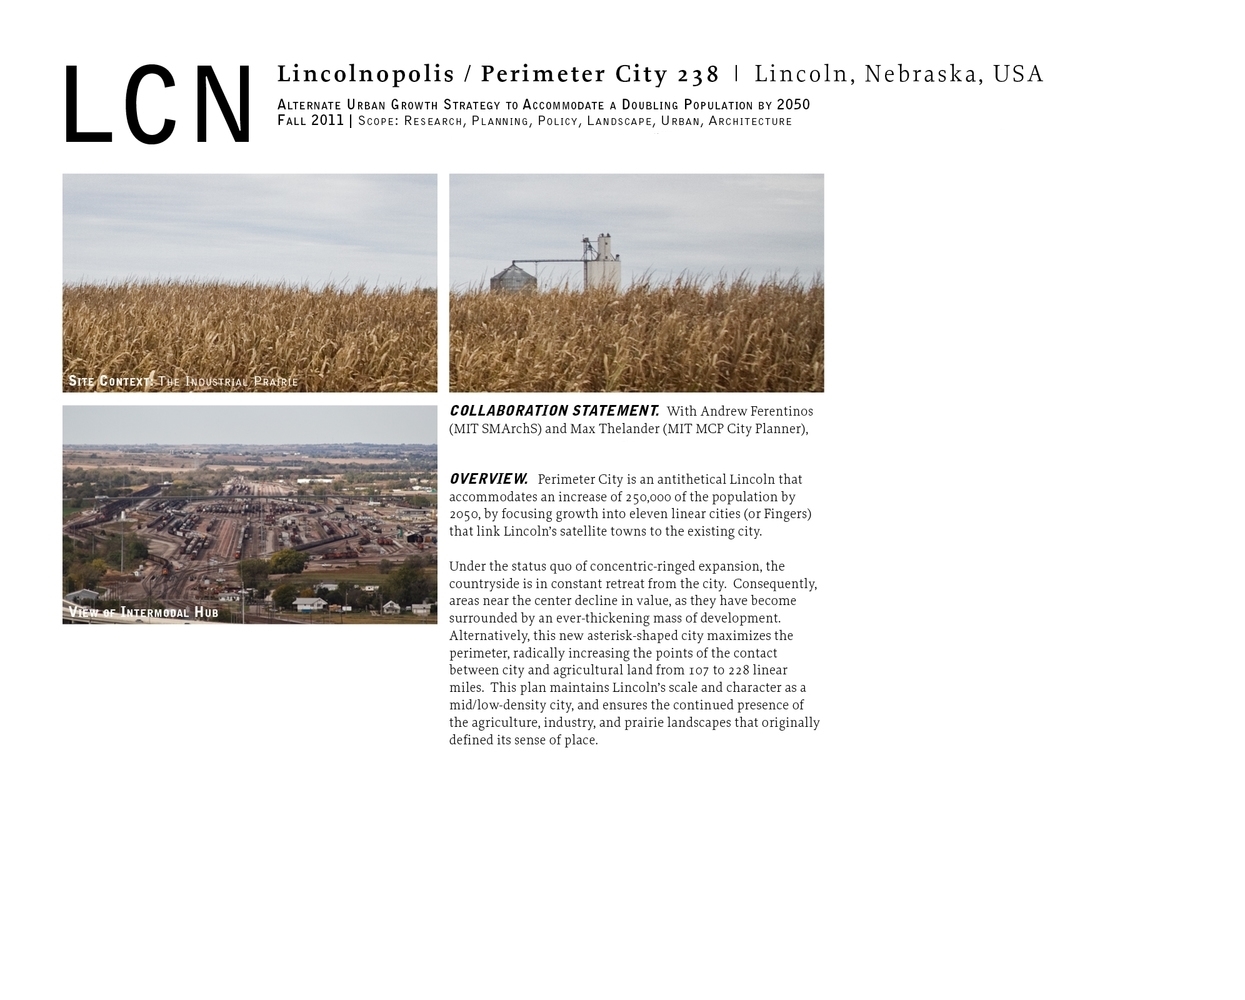 Perimeter City - Lincoln 2050